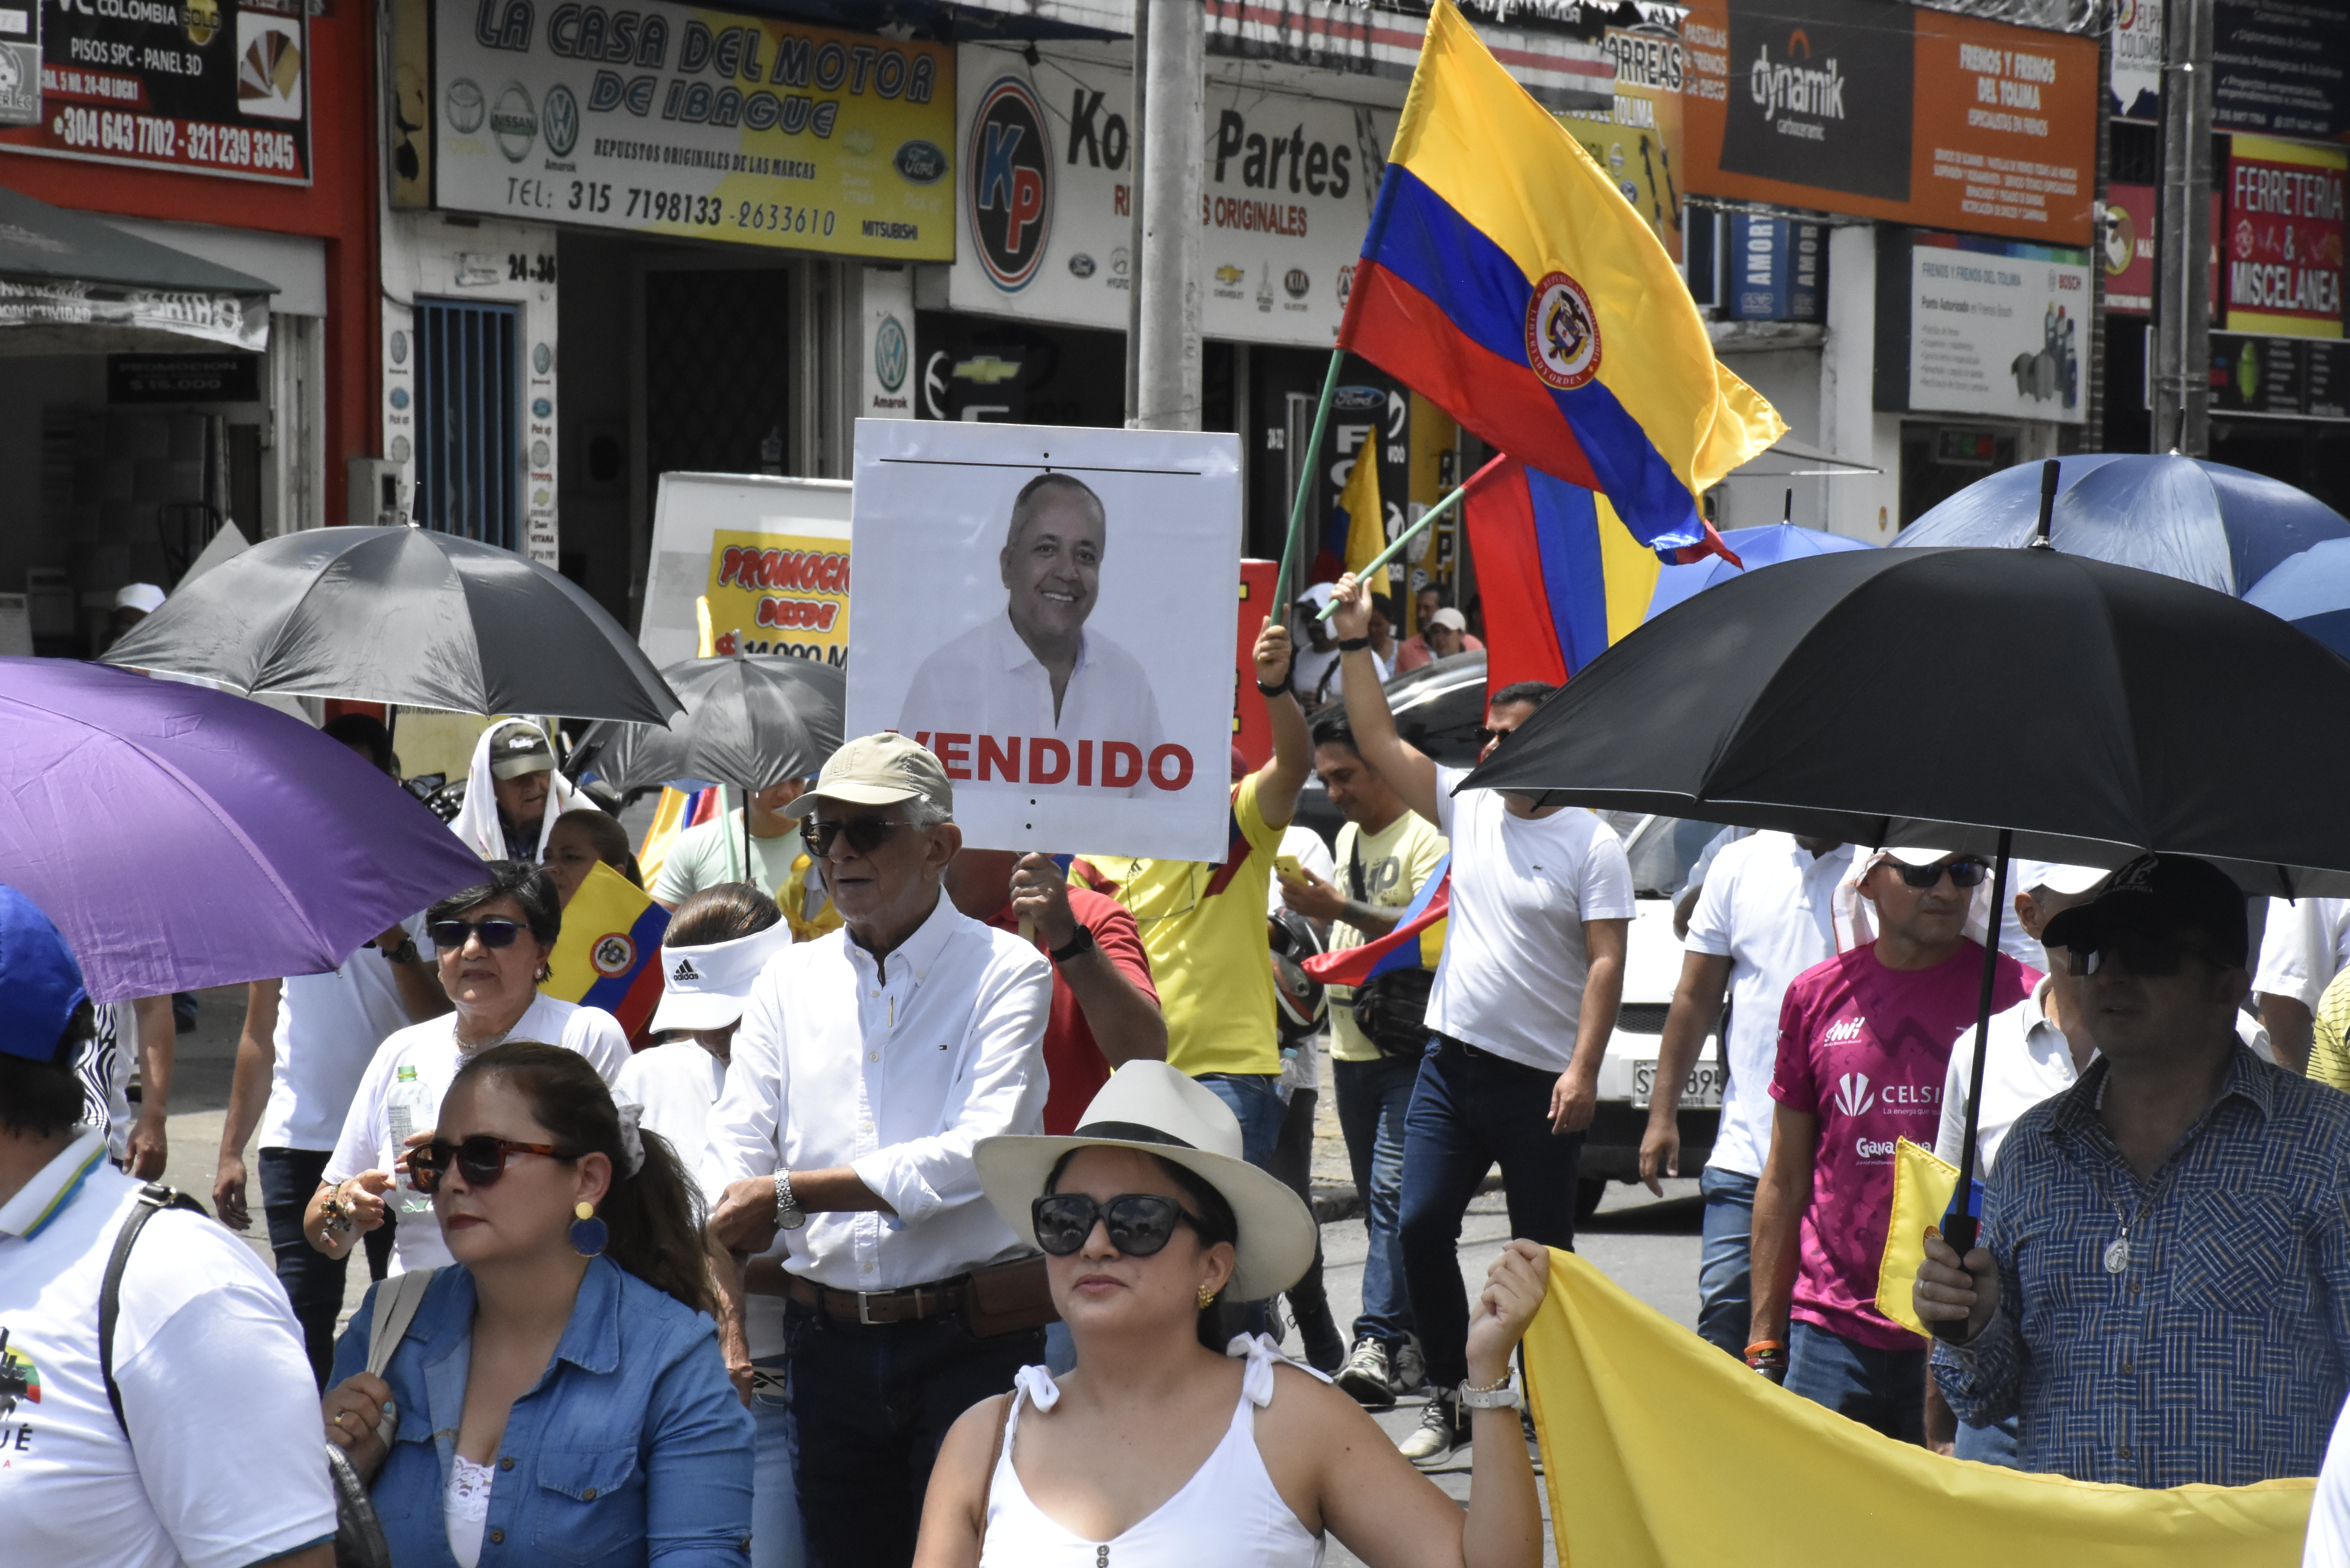 Desde la manifestación, también se despacharon en contra del senador Óscar Barreto, calificándolo de ‘vendido’ en algunas pancartas.